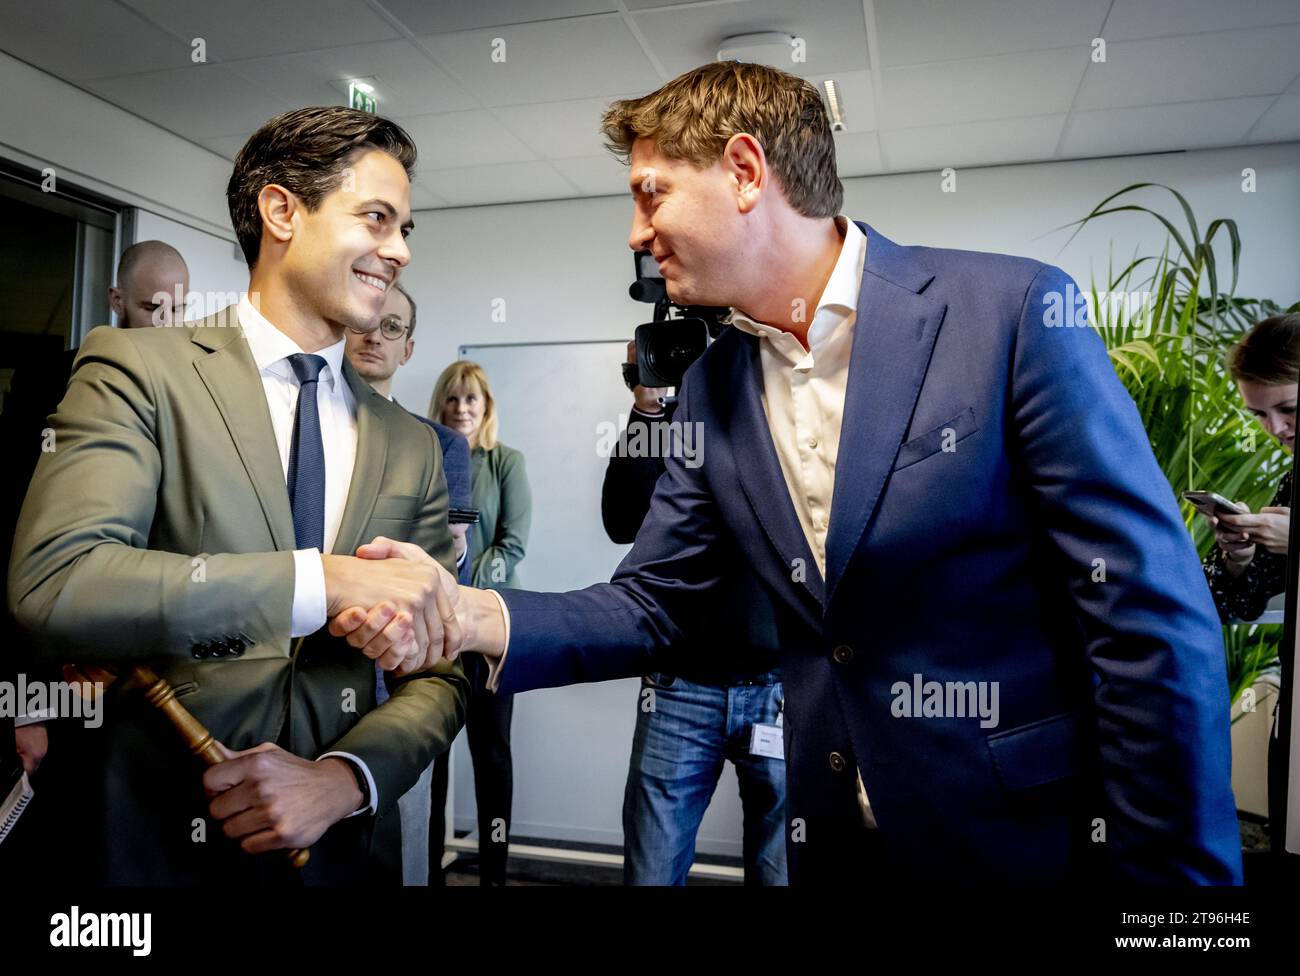 LA HAYE - le chef du parti Rob Jetten lors d'une réunion de faction D66, un jour après les élections à la Chambre des représentants. ANP ROBIN UTRECHT netherlands Out - belgique Out Banque D'Images